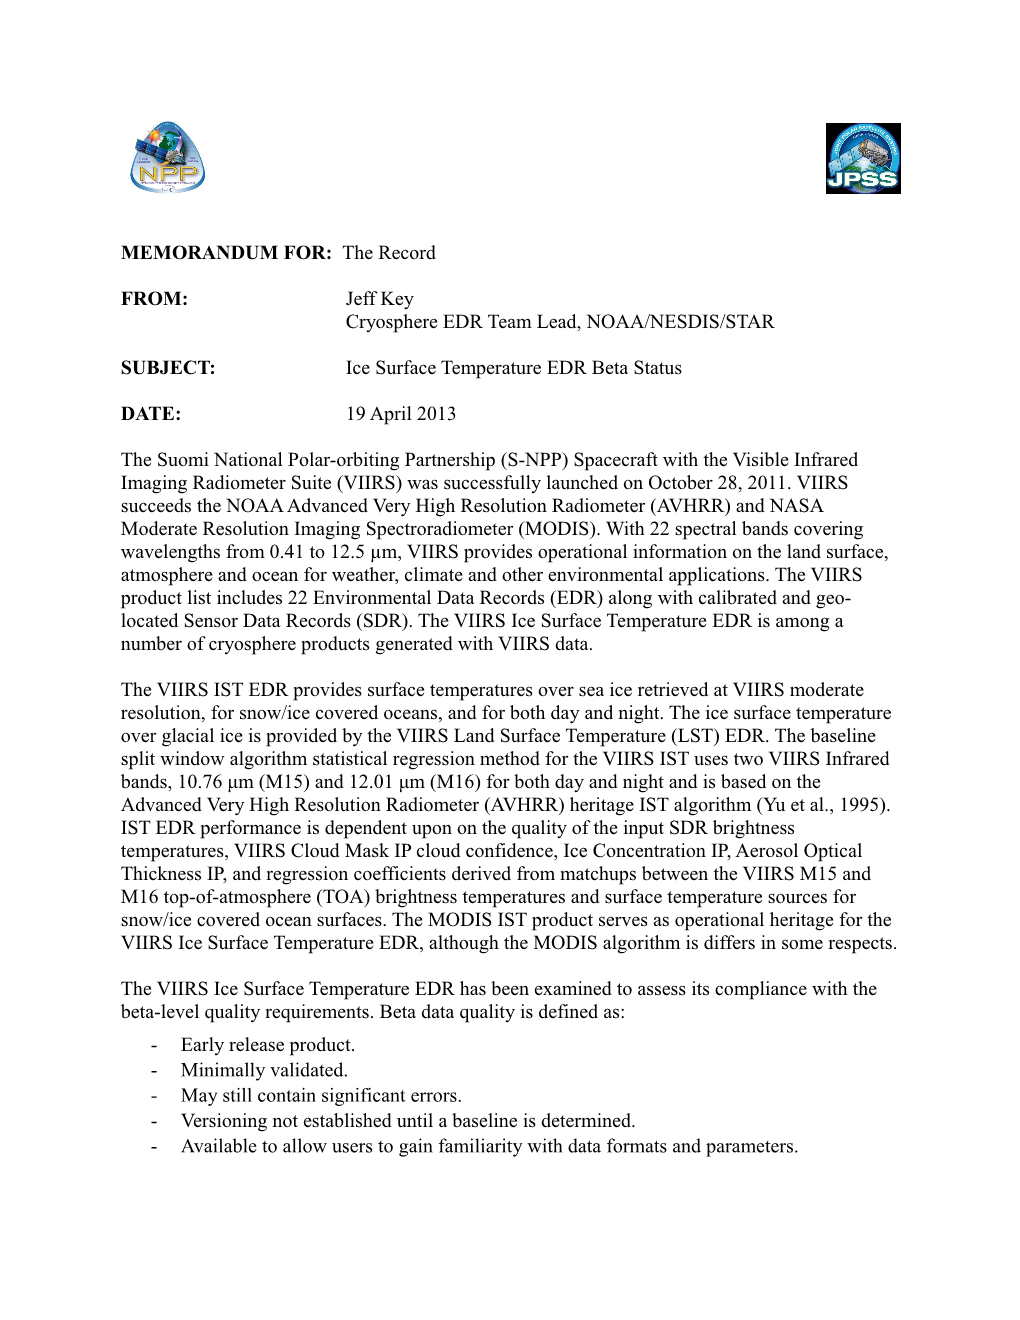 Cryosphere EDR Team Lead, NOAA/NESDIS/STAR